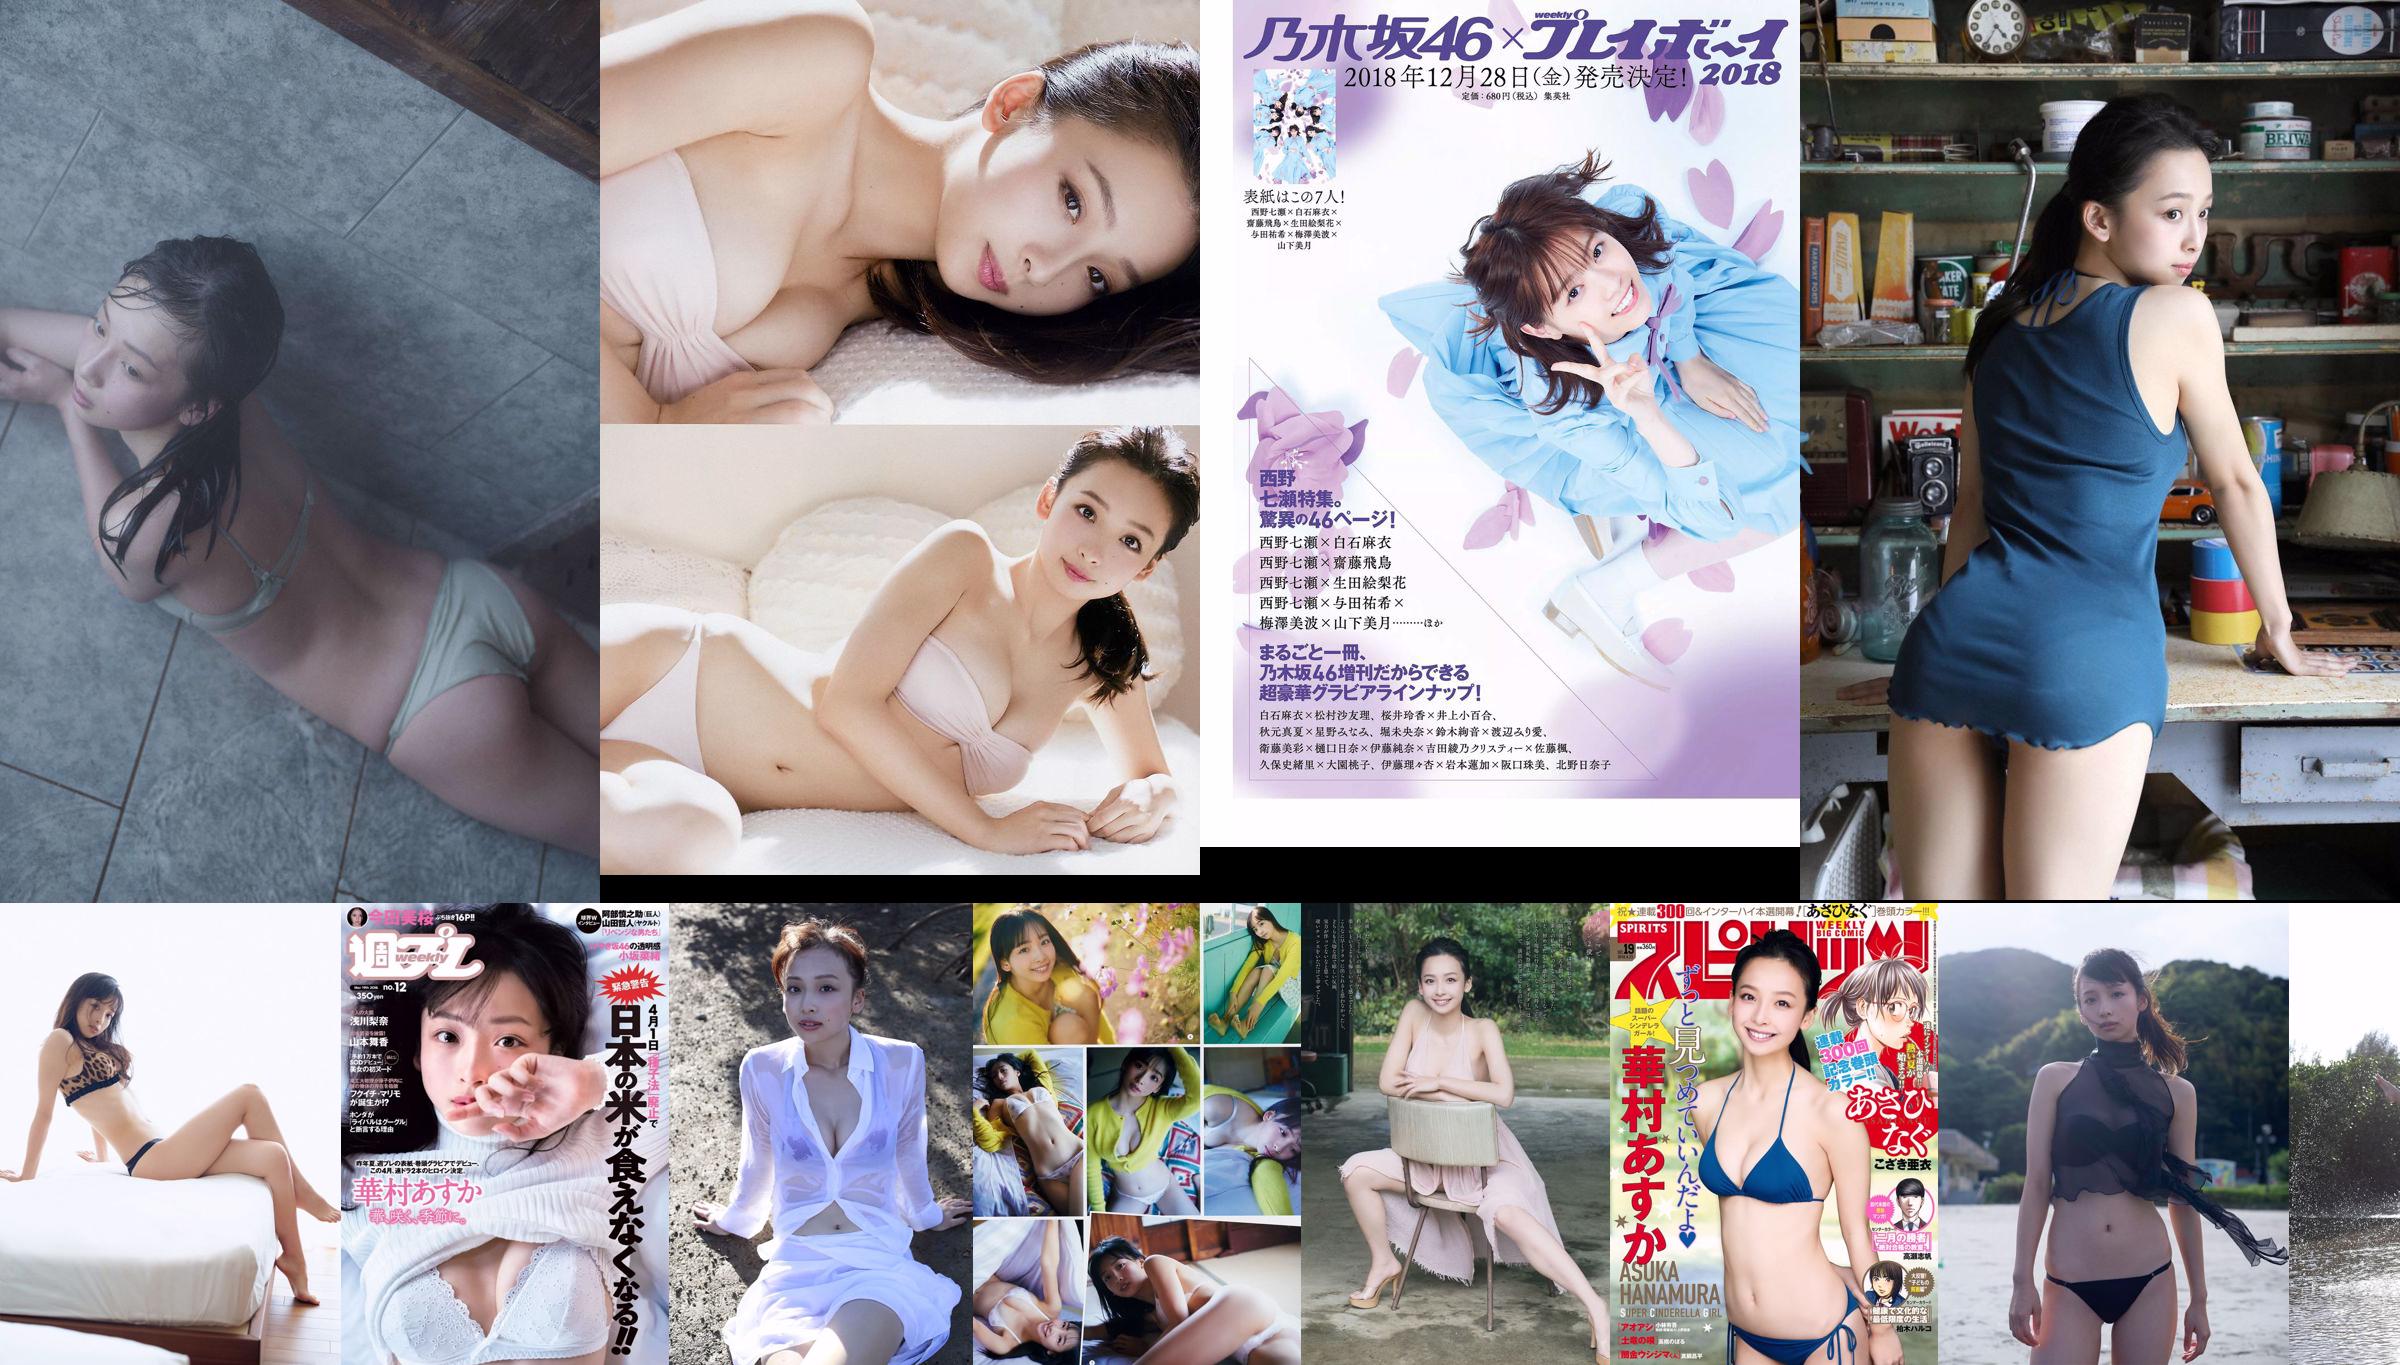 [Young Gangan] Asuka Hanamura Miyu Kitamuki 2019 No.01 Photo Magazine No.700283 Página 3